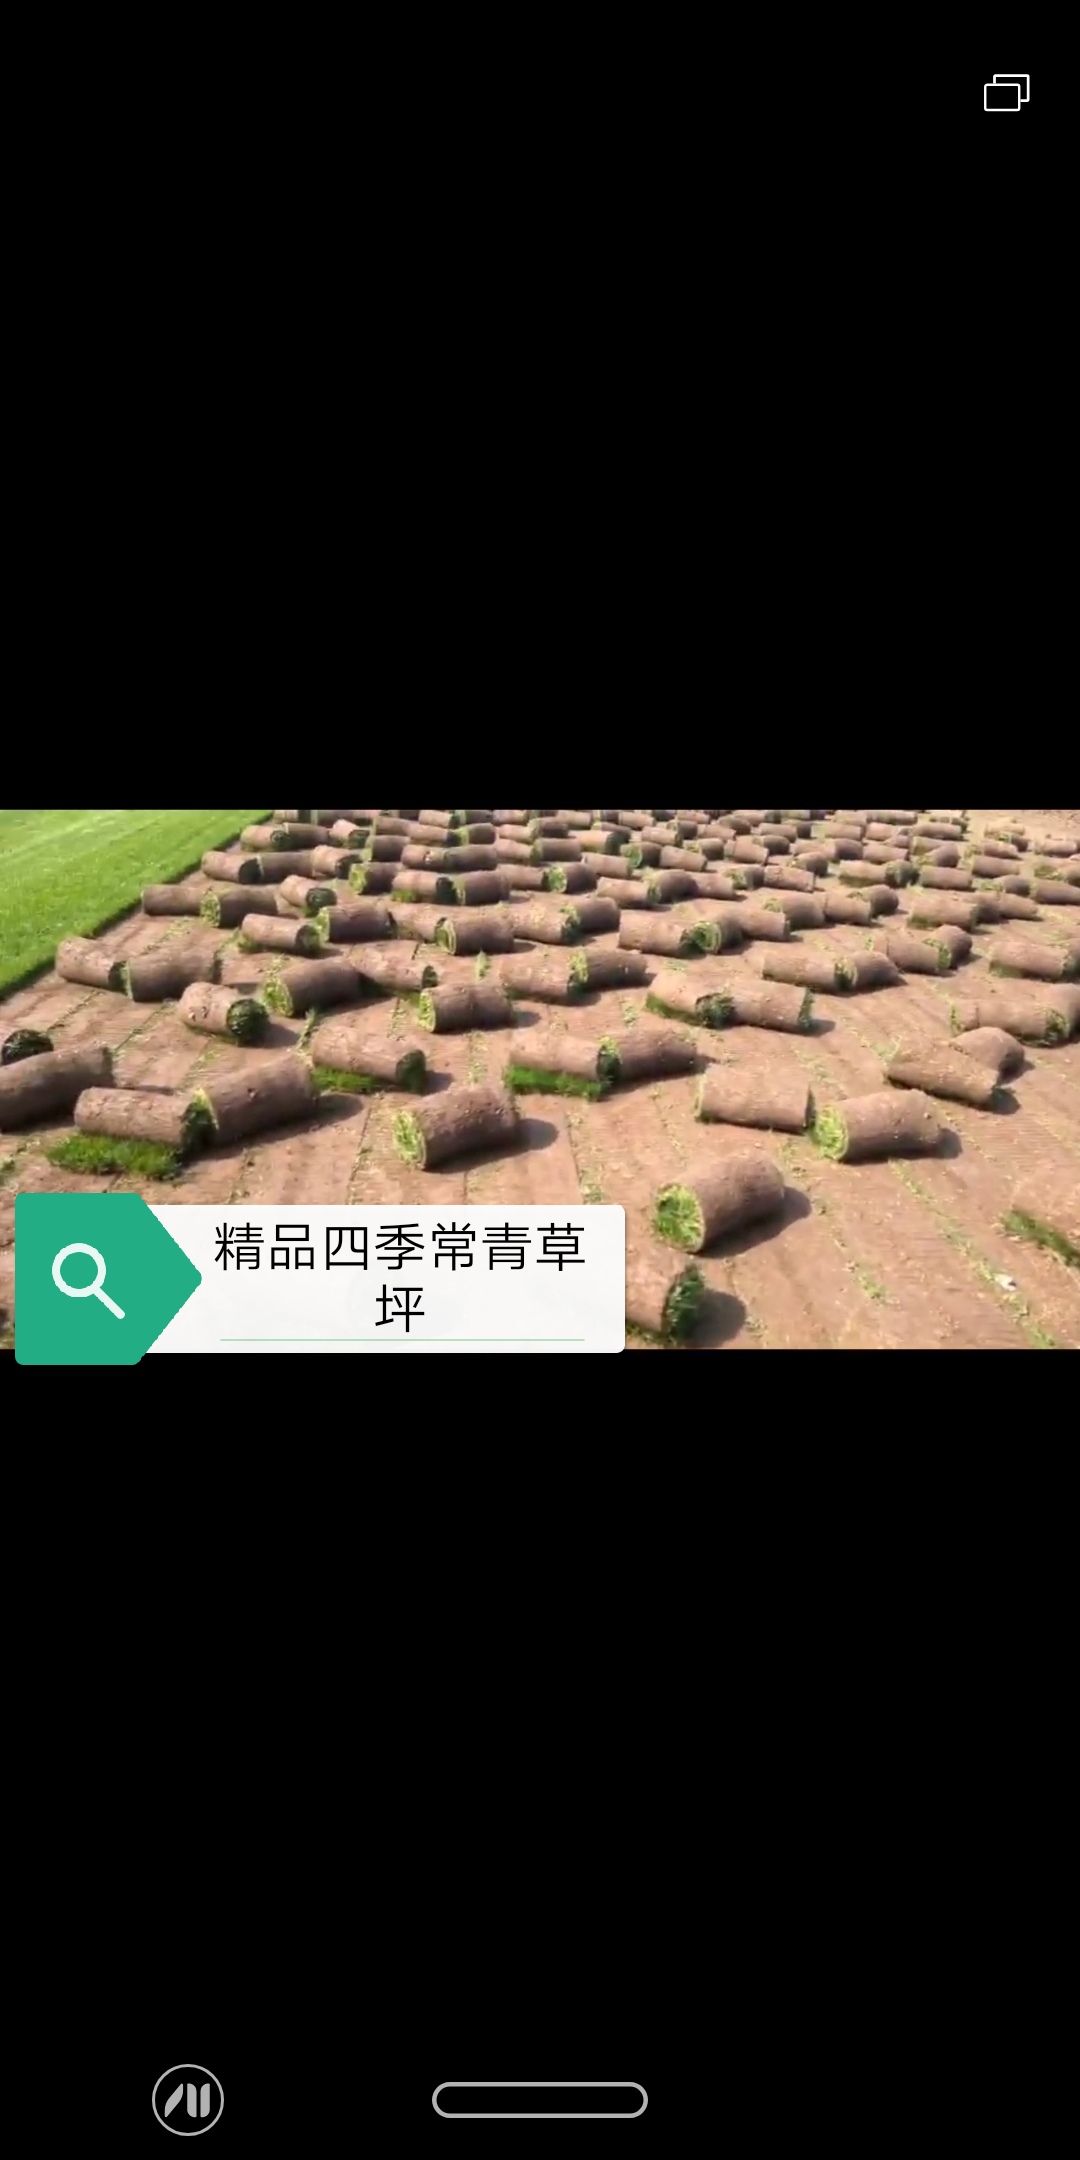 北京 北京草坪直销草坪价格草坪种植